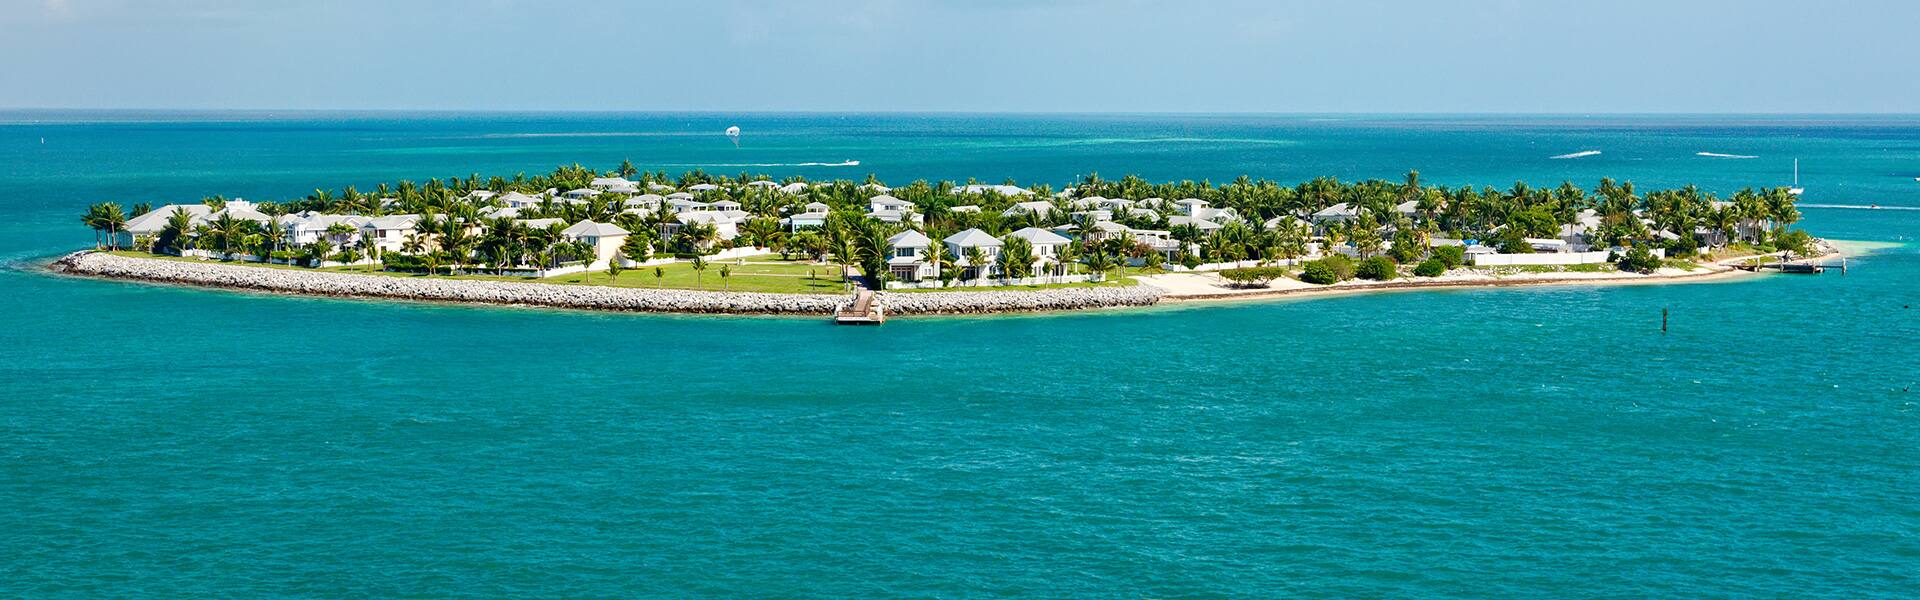 Bahamas: Great Stirrup Cay & Key West